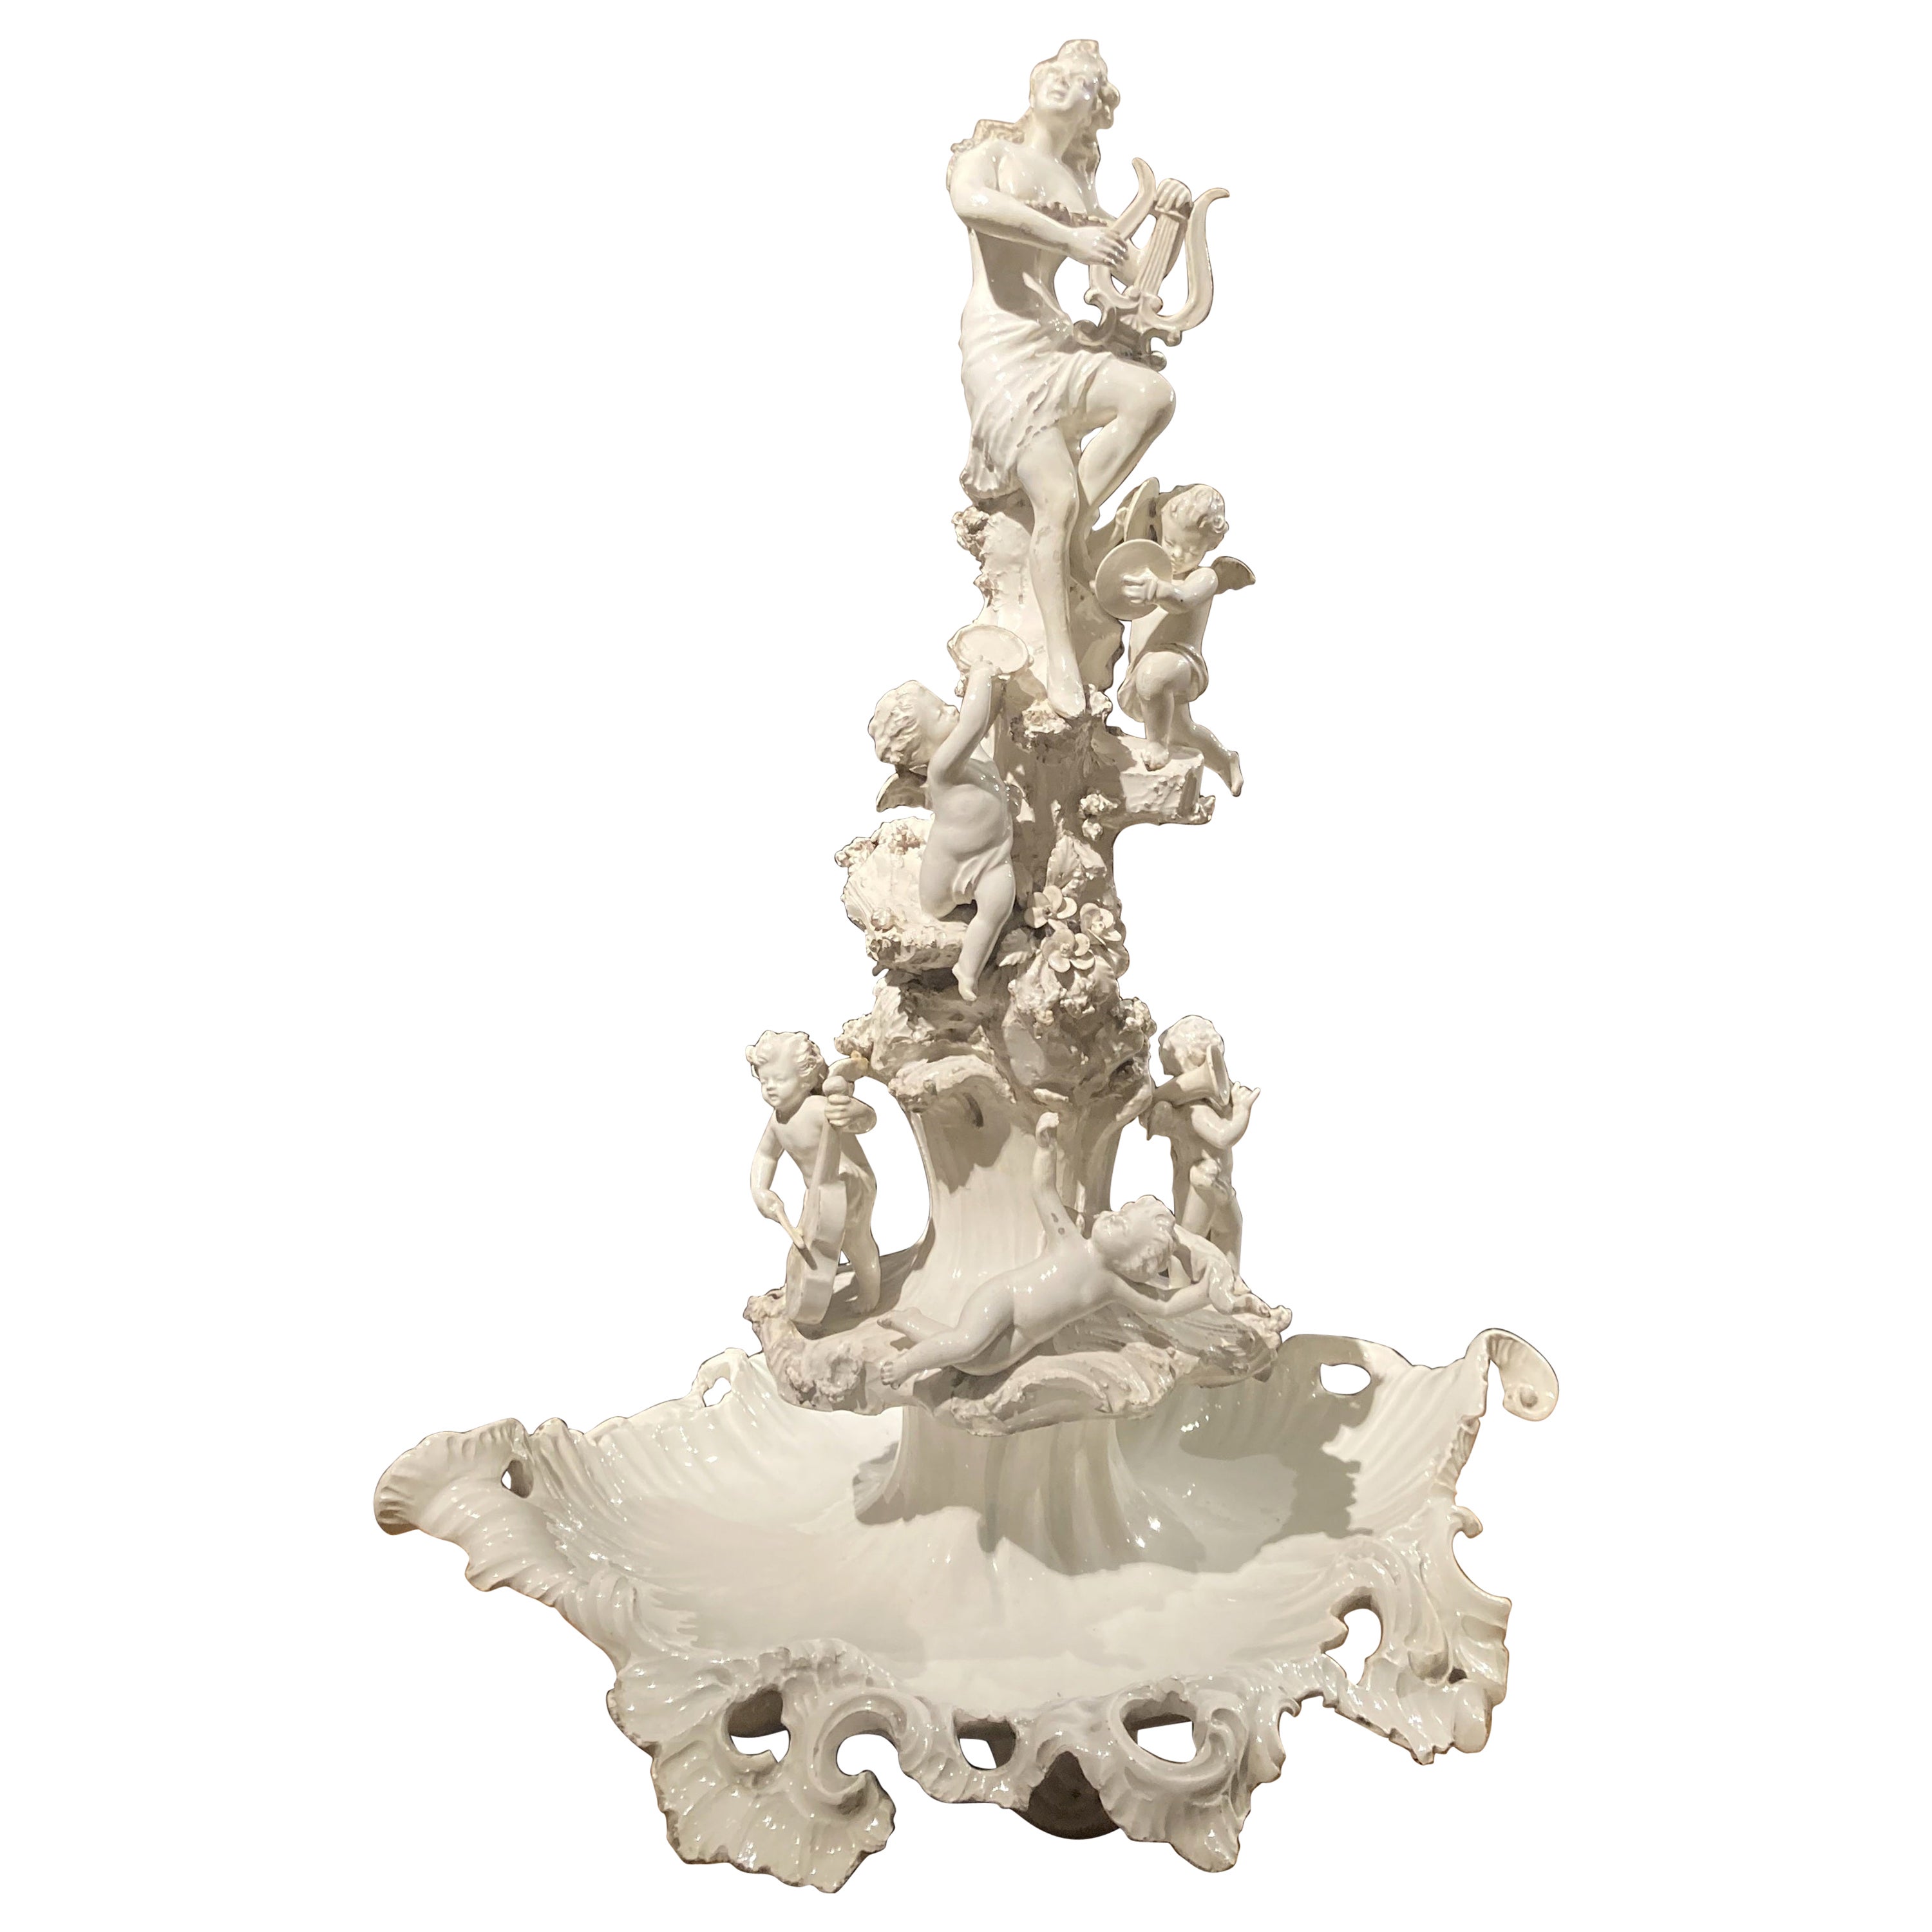 Centre de table figuratif italien du 18ème siècle en porcelaine émaillée blanche de Capodimonte